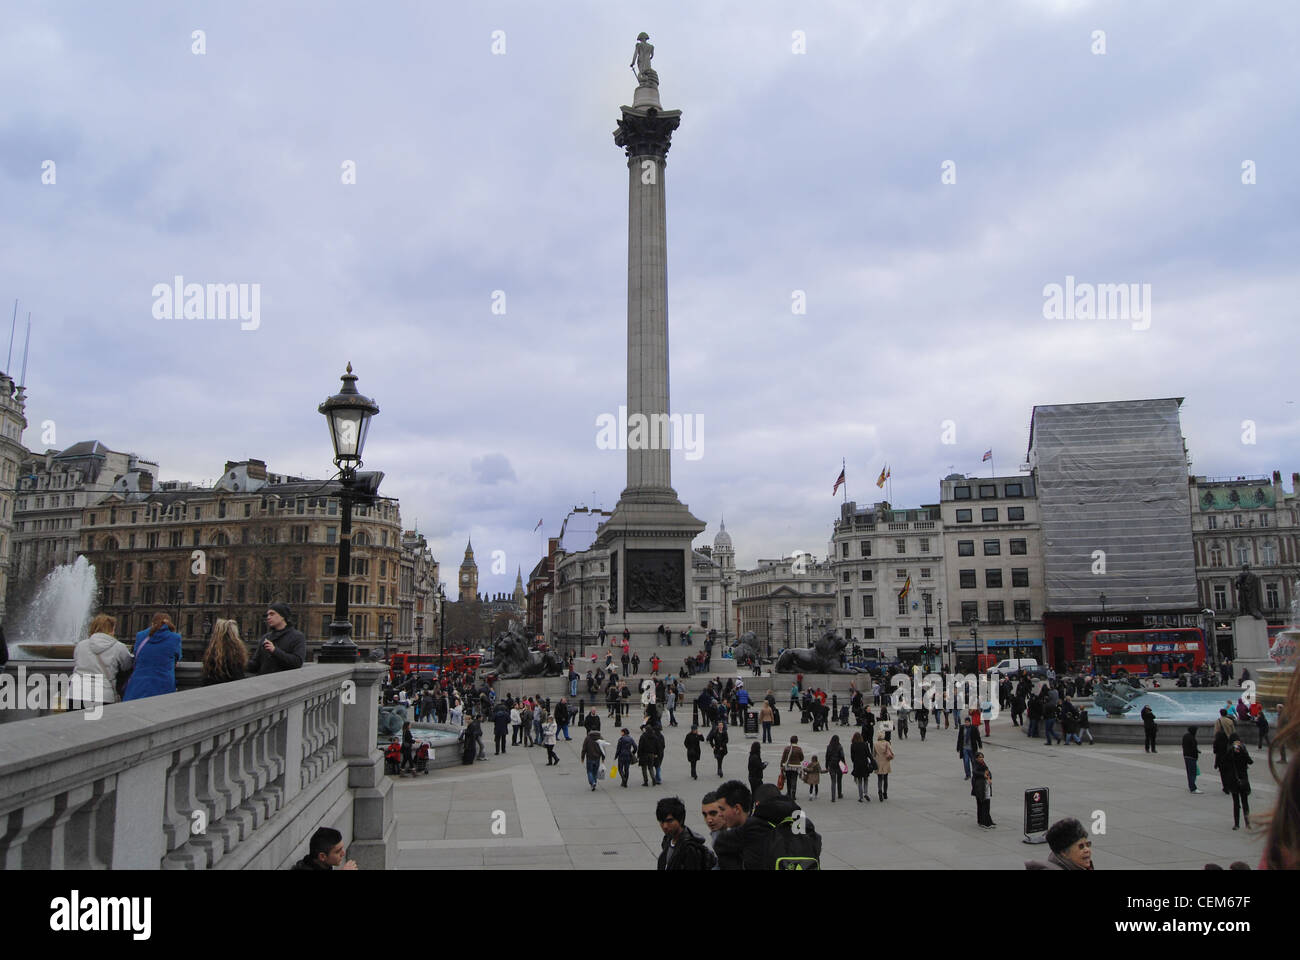 Das Denkmal für den großen Brand von London - London Sightseeing Vereinigtes Königreich Stockfoto